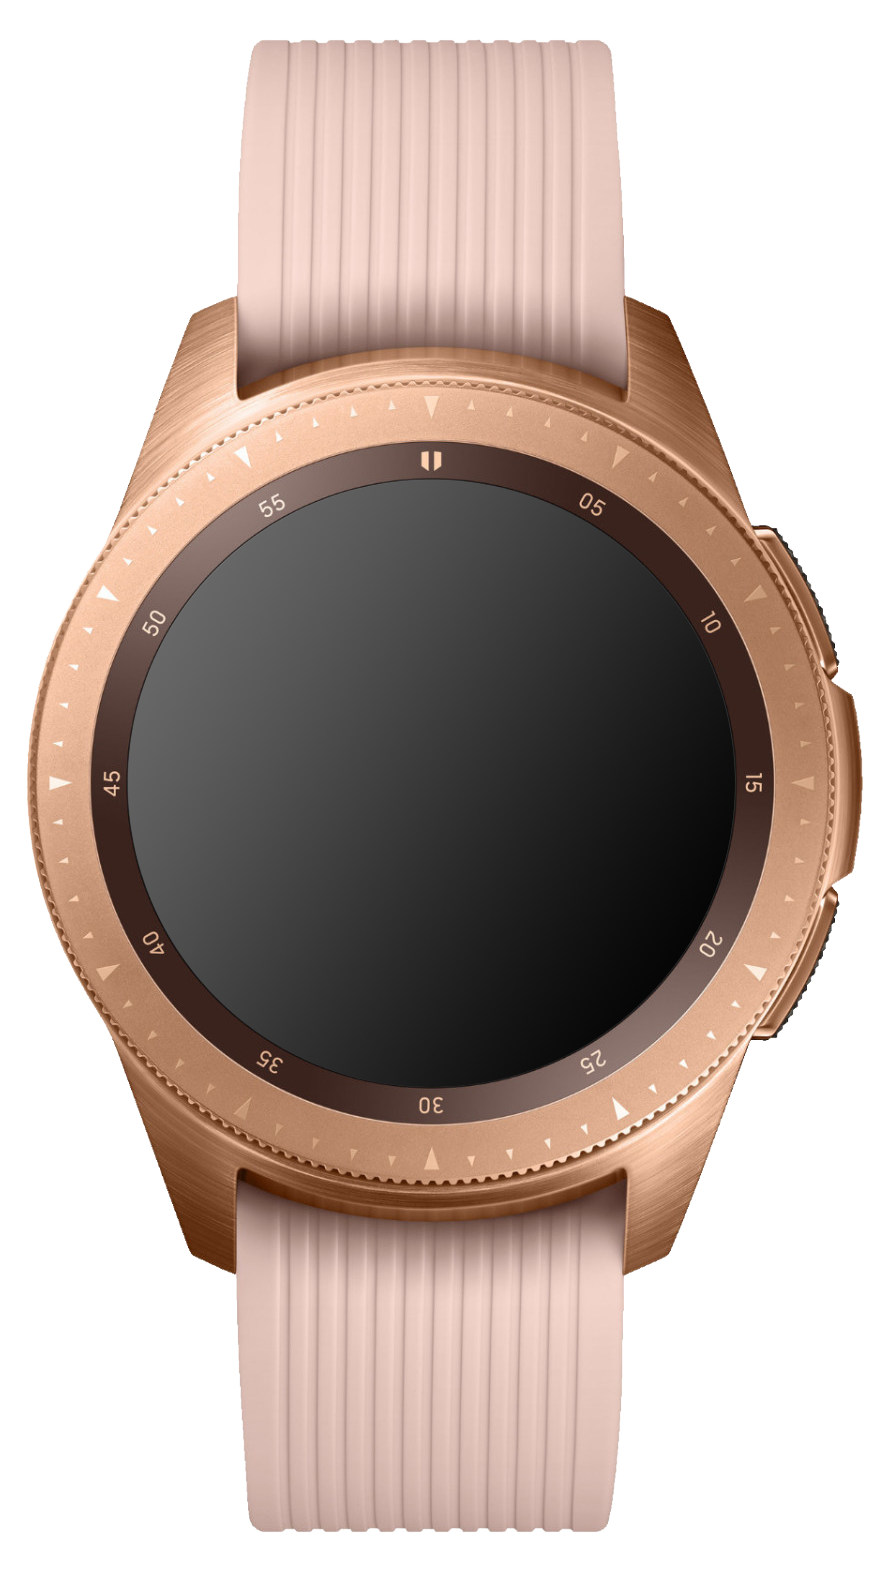 Samsung Galaxy Watch Galileo 42mm SM-R815 LTE rose gold - Ohne Vertrag